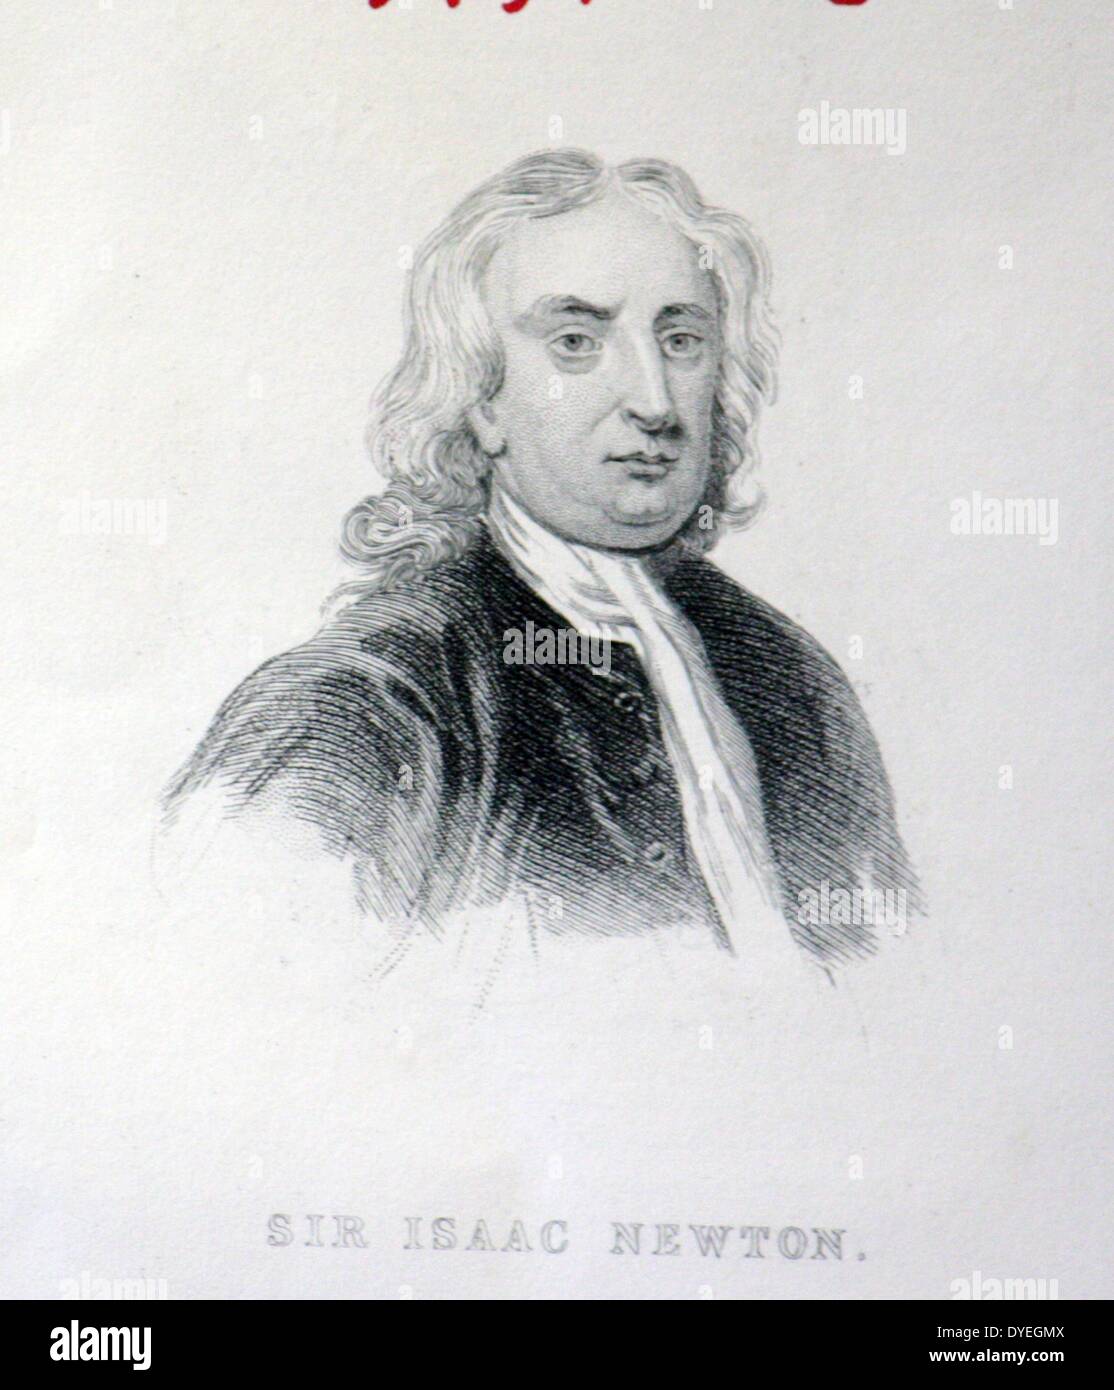 Sir Isaac Newton (1642-1727) était un physicien et mathématicien anglais qui est largement considéré comme l'un des plus influents scientifiques de tous les temps et comme une figure clé de la révolution scientifique. Banque D'Images